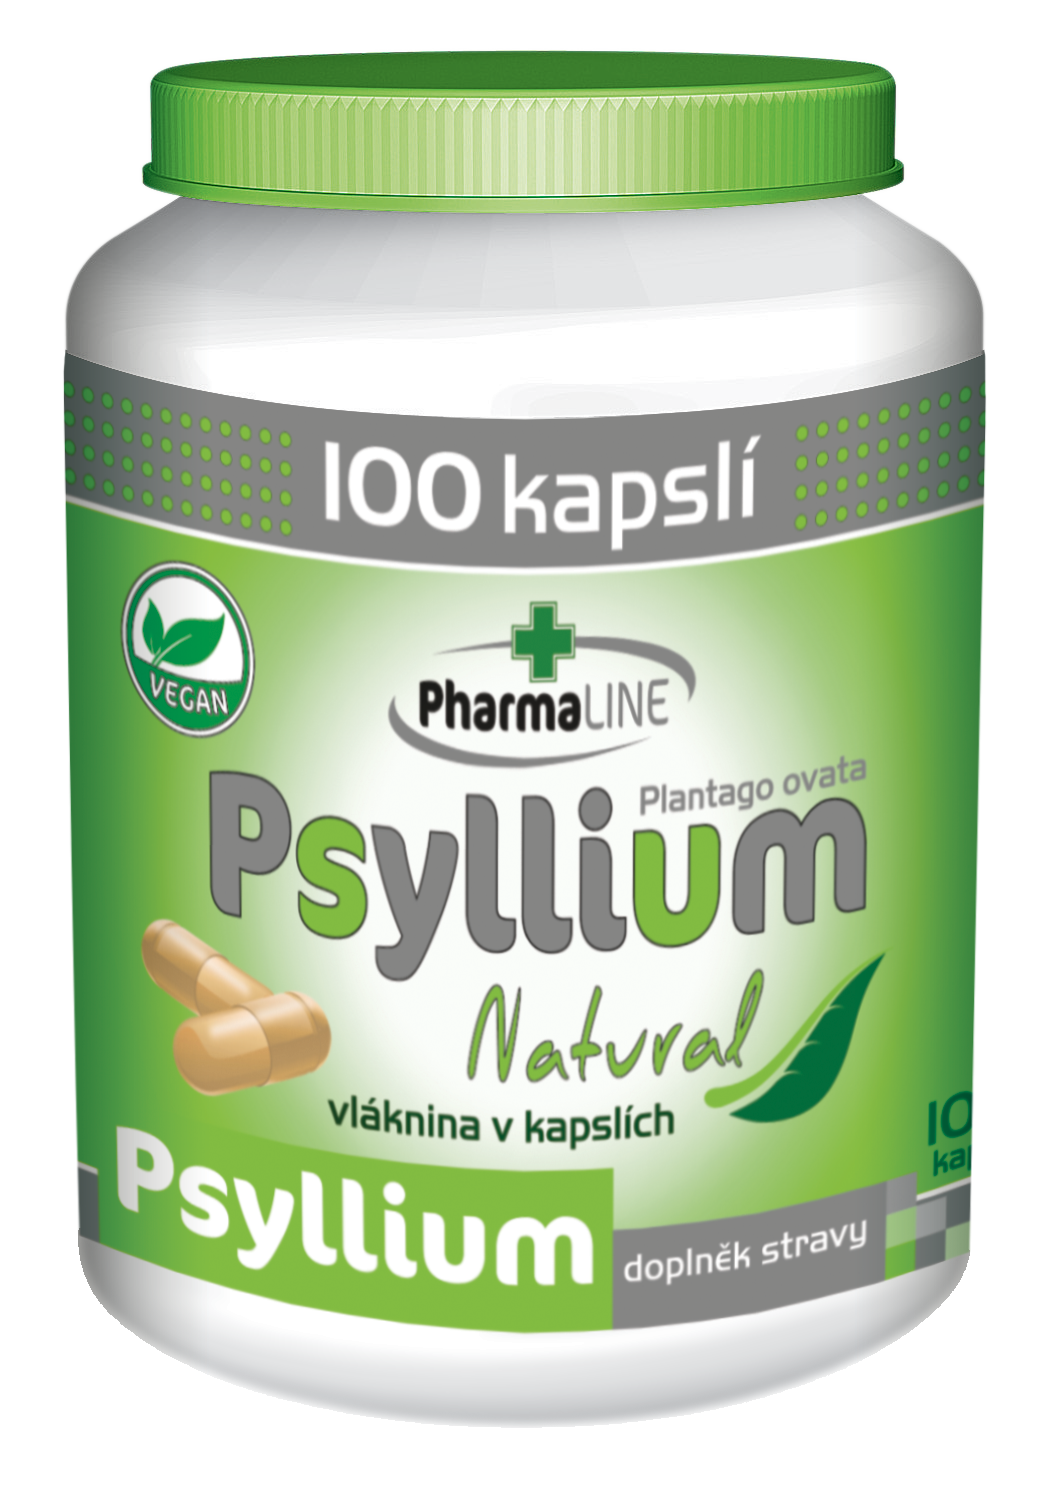 Psyllium-natural-3D